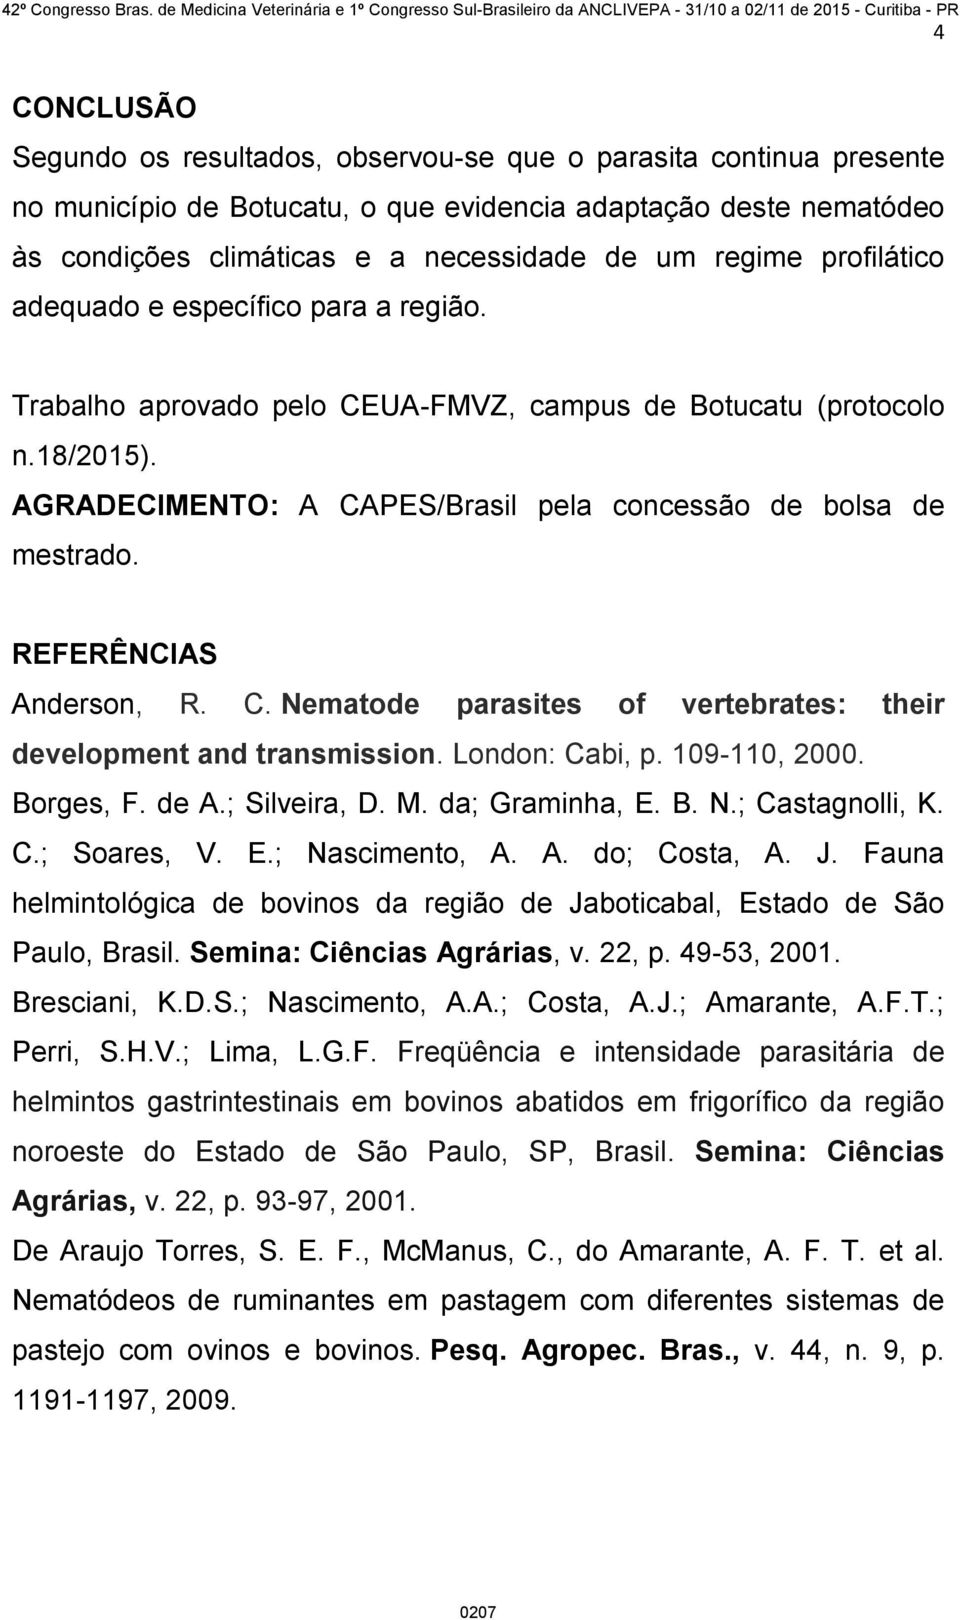 REFERÊNCIAS Anderson, R. C. Nematode parasites of vertebrates: their development and transmission. London: Cabi, p. 109-110, 2000. Borges, F. de A.; Silveira, D. M. da; Graminha, E. B. N.; Castagnolli, K.